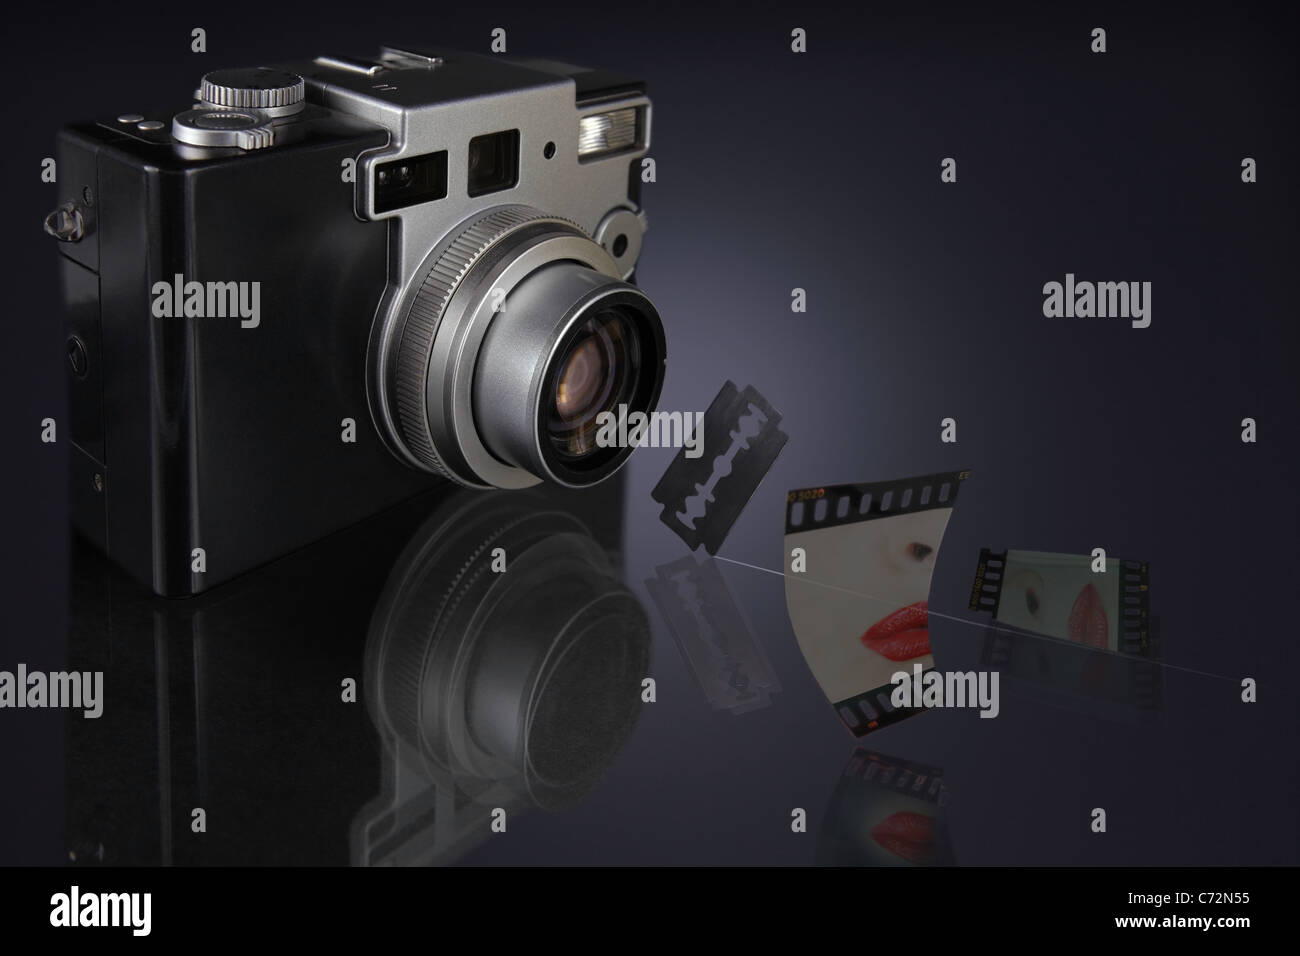 Kamera mit Objektiv fokussiert auf Rasierklinge hängen in der Luft und einer Rutsche scharf in zwei Stücke geschnitten Stockfoto